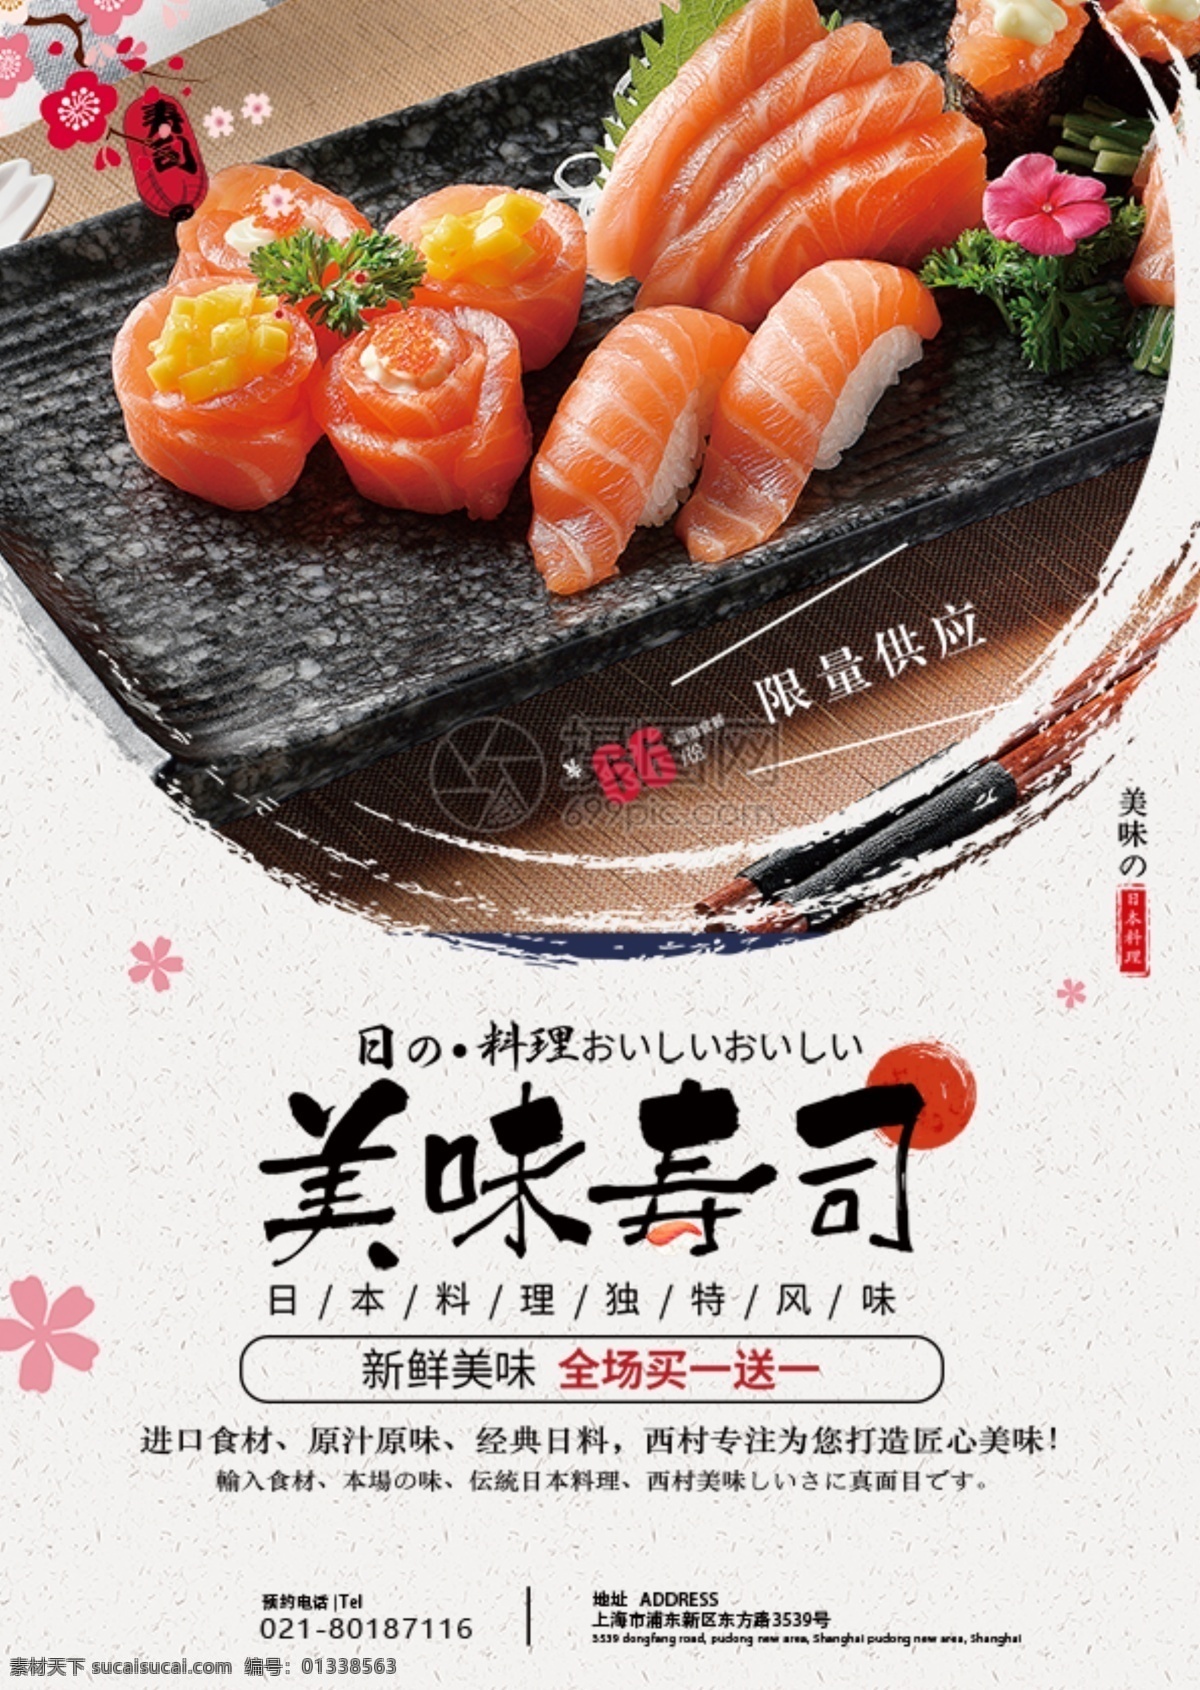 美味 寿司 日 料 美食 宣传单 日料 日式料理 食物 餐饮 菜单 餐厅